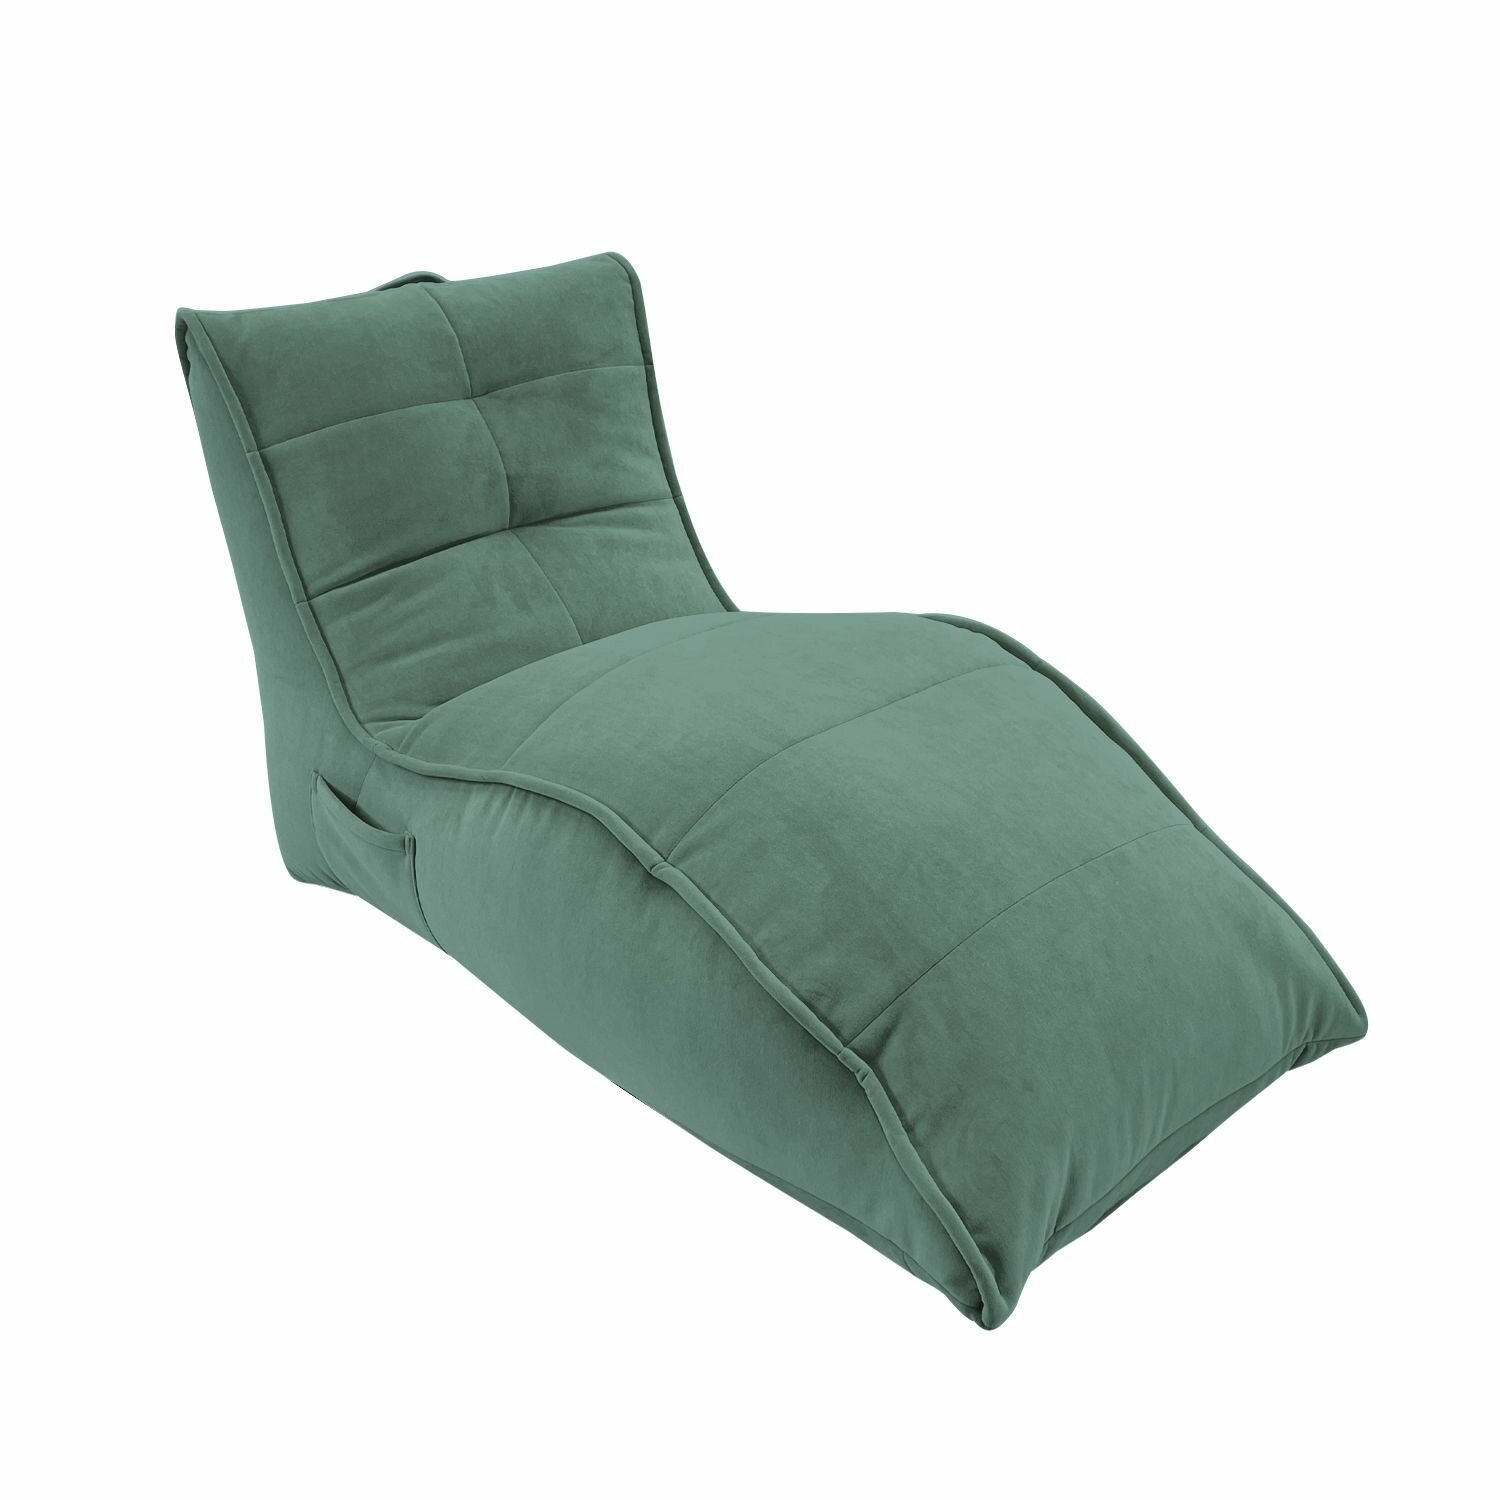 Бескаркасное кресло для отдыха aLounge - Avatar Sofa - Pepper Mint (велюр, мятный) - лаунж мебель в гостиную, спальню, детскую, на балкон